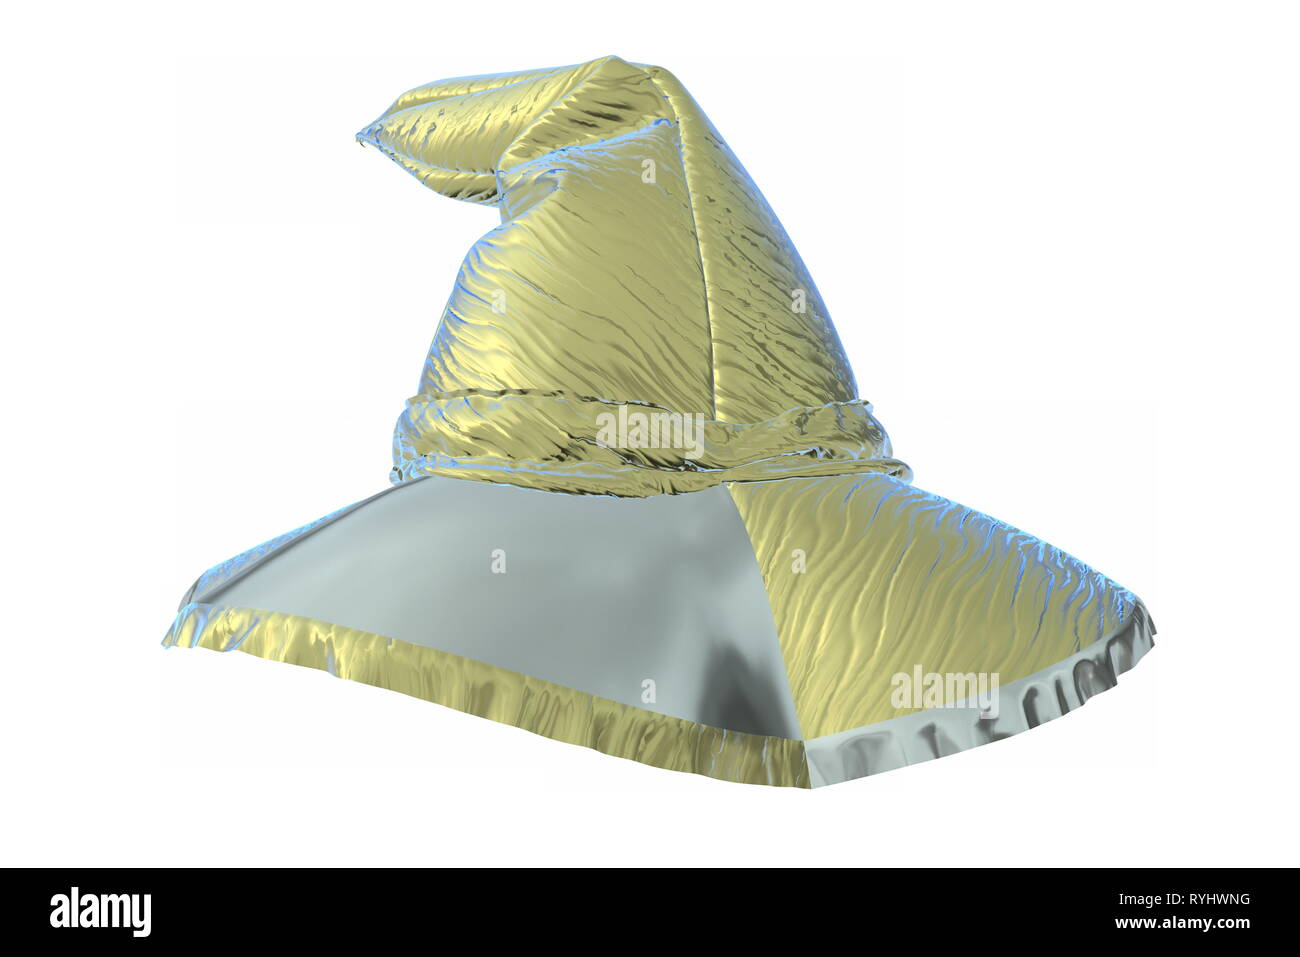 Eine 3D-Render Abbildung einer Cartoon Halloween Hexe Hut aus hellen wider Folie oder Kunststoff shini iolated auf Weiß. Mockup für Ihr Design Stockfoto